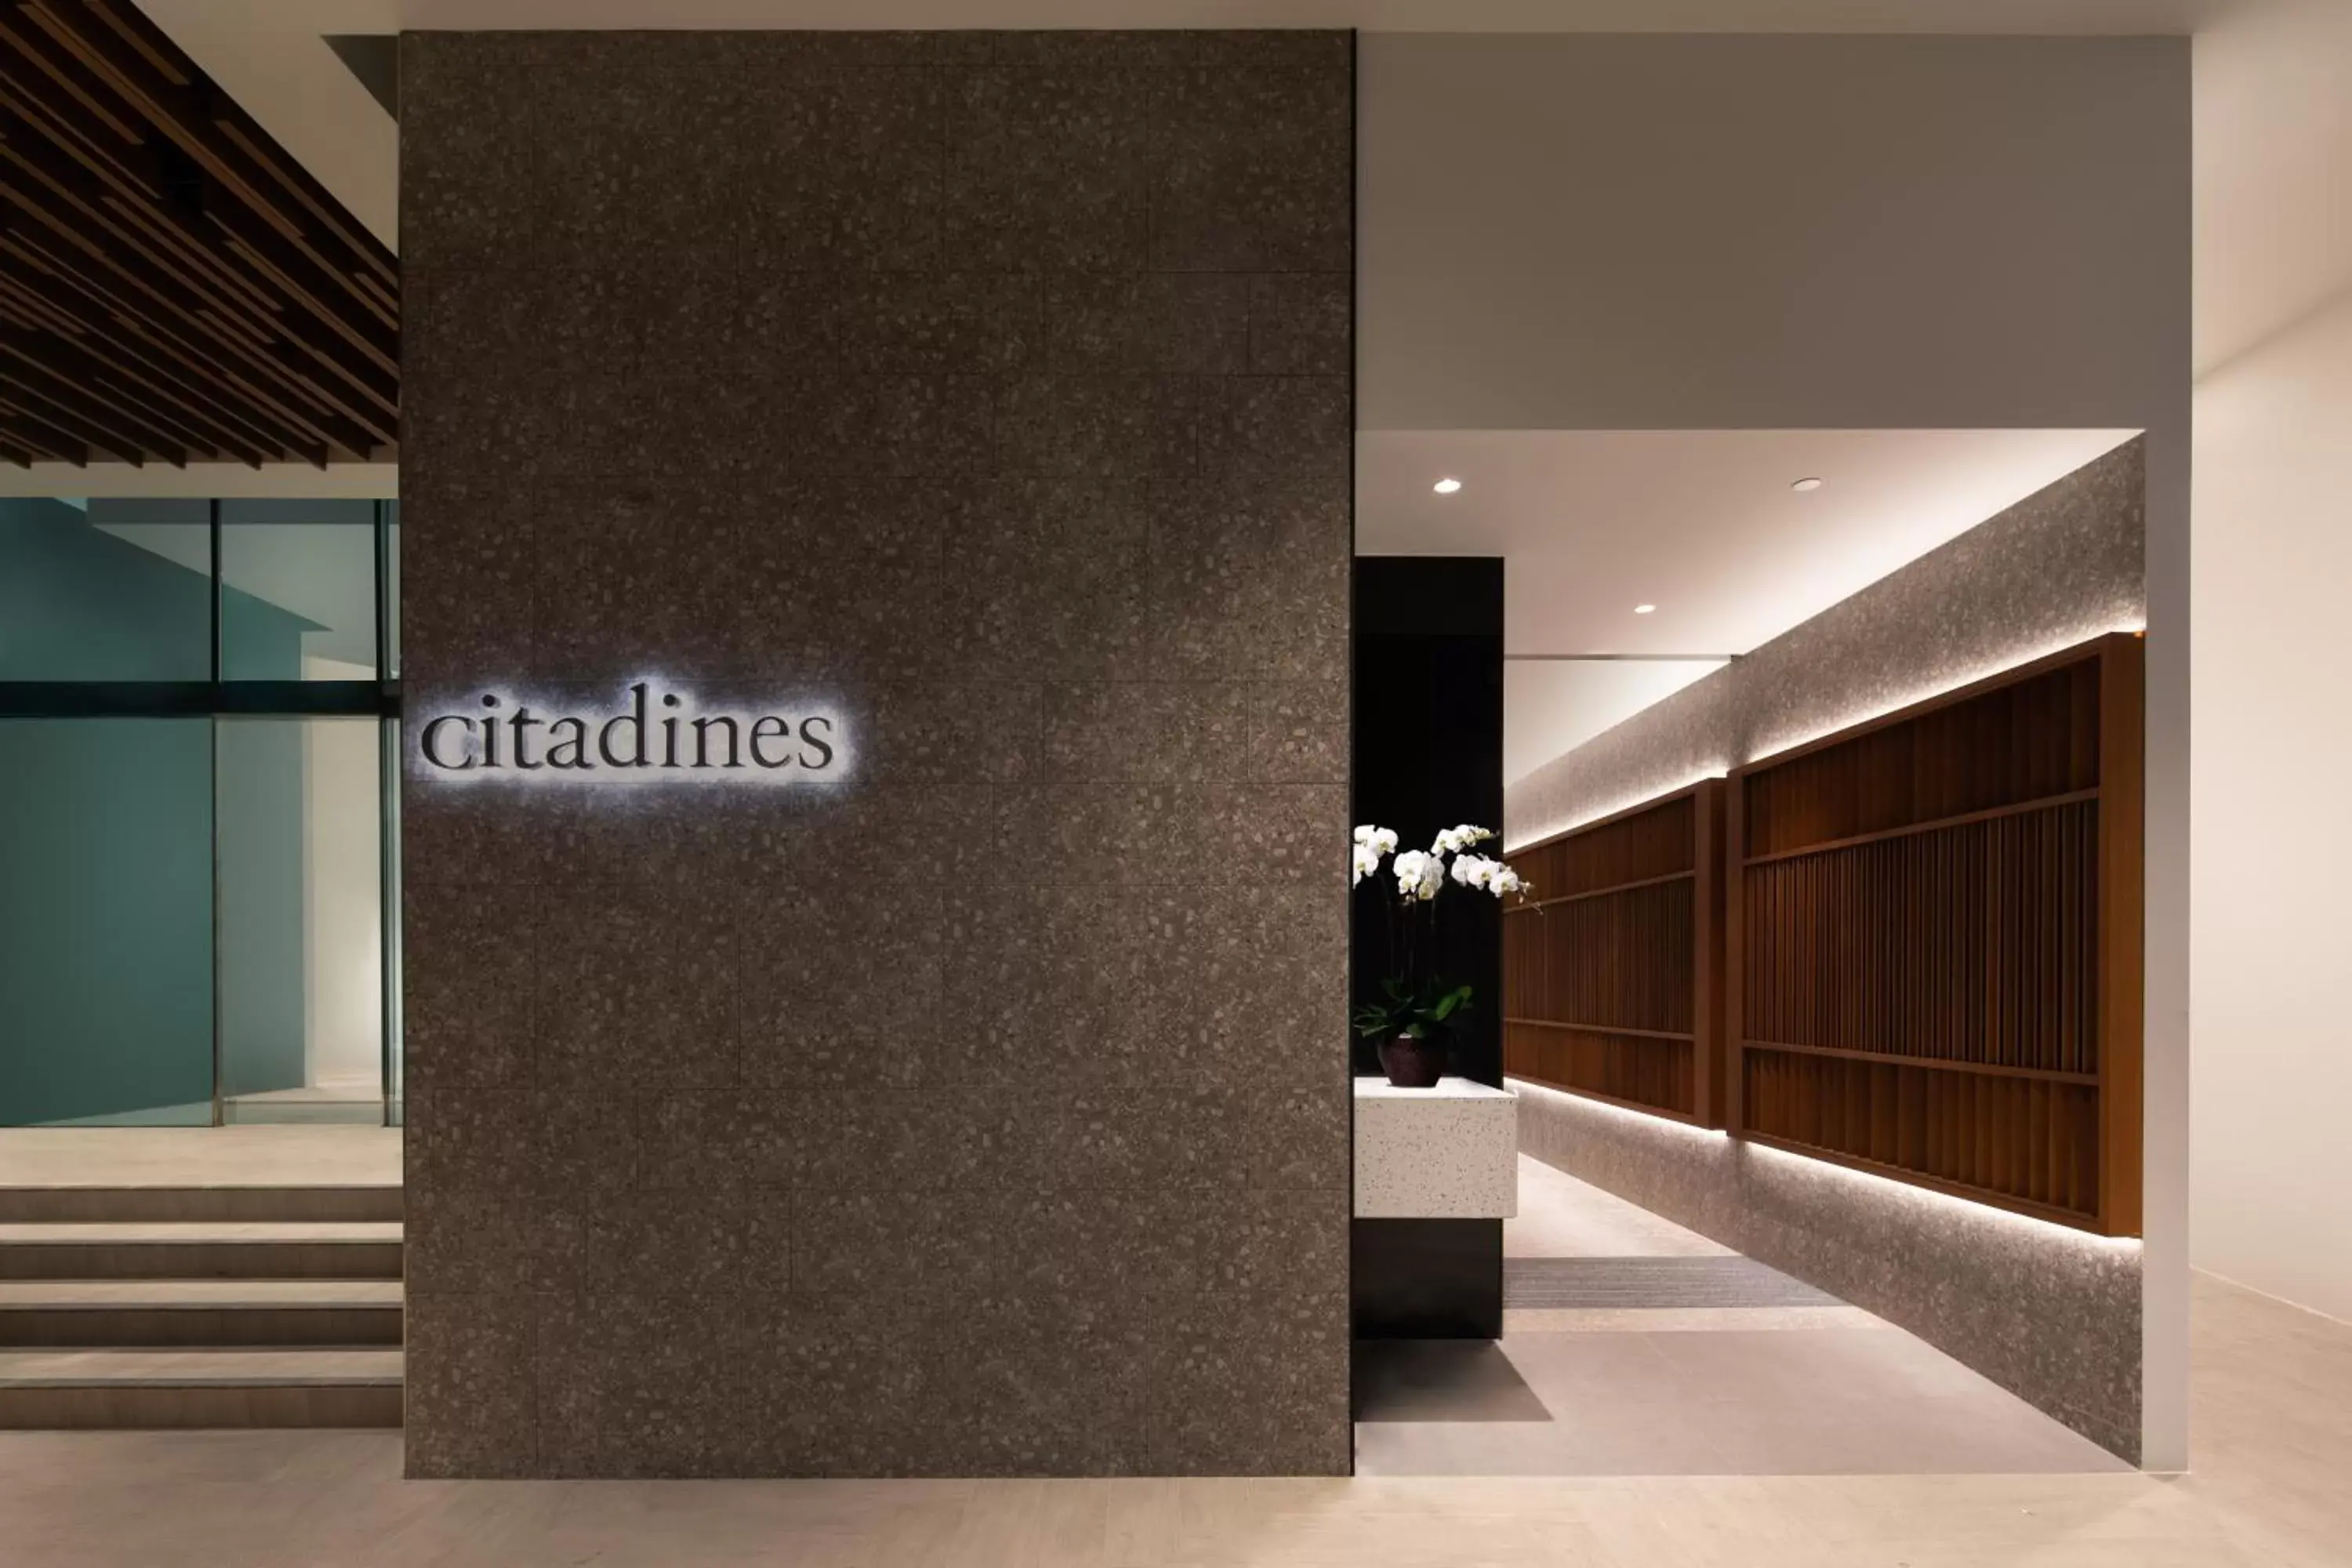 Facade/entrance, Lobby/Reception in Citadines Rochor